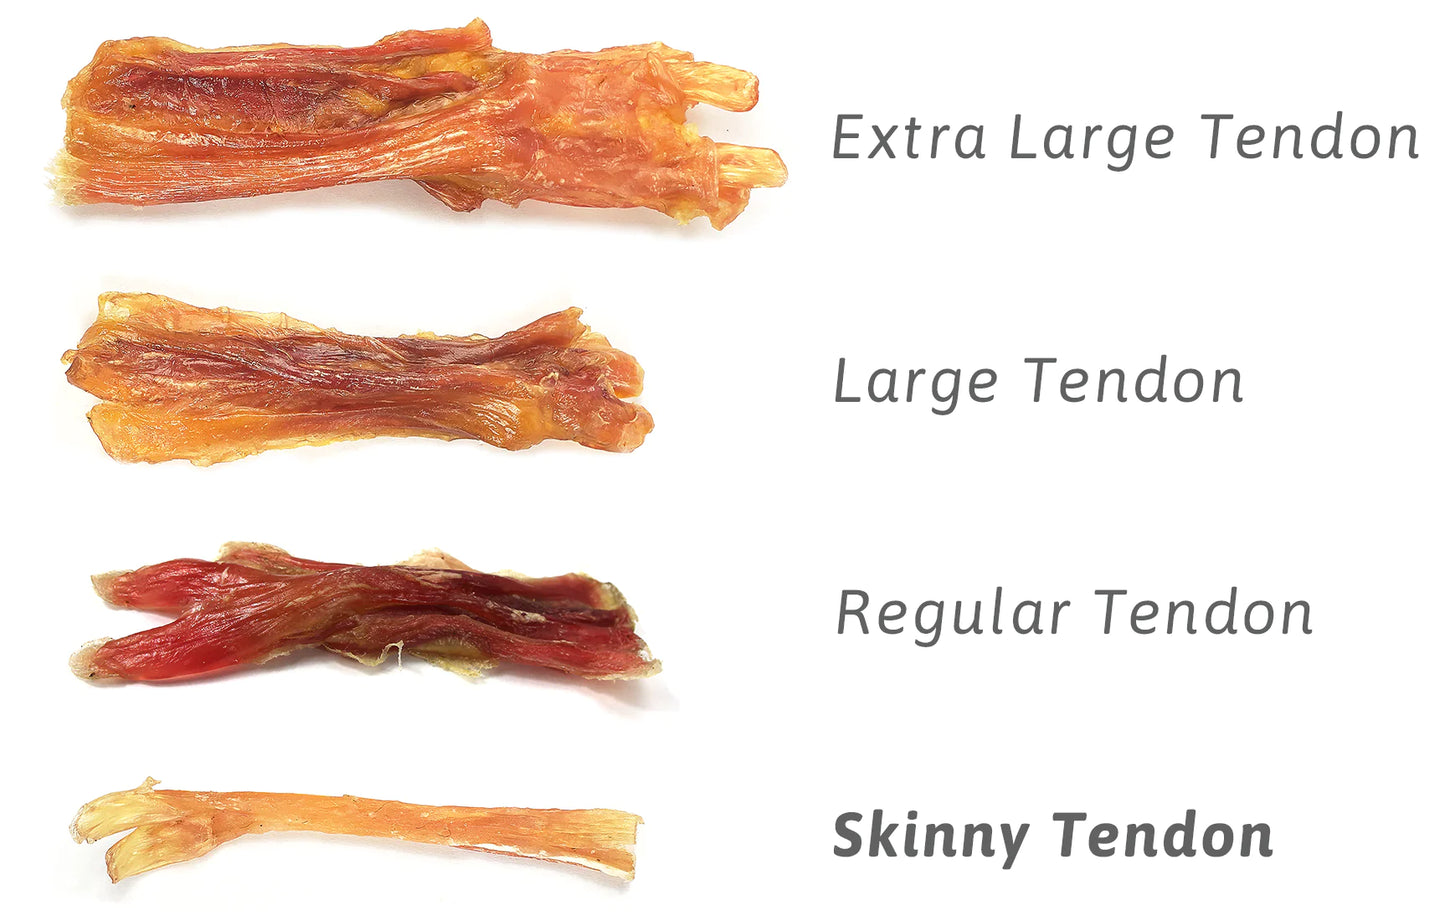 Skinny beef tendons